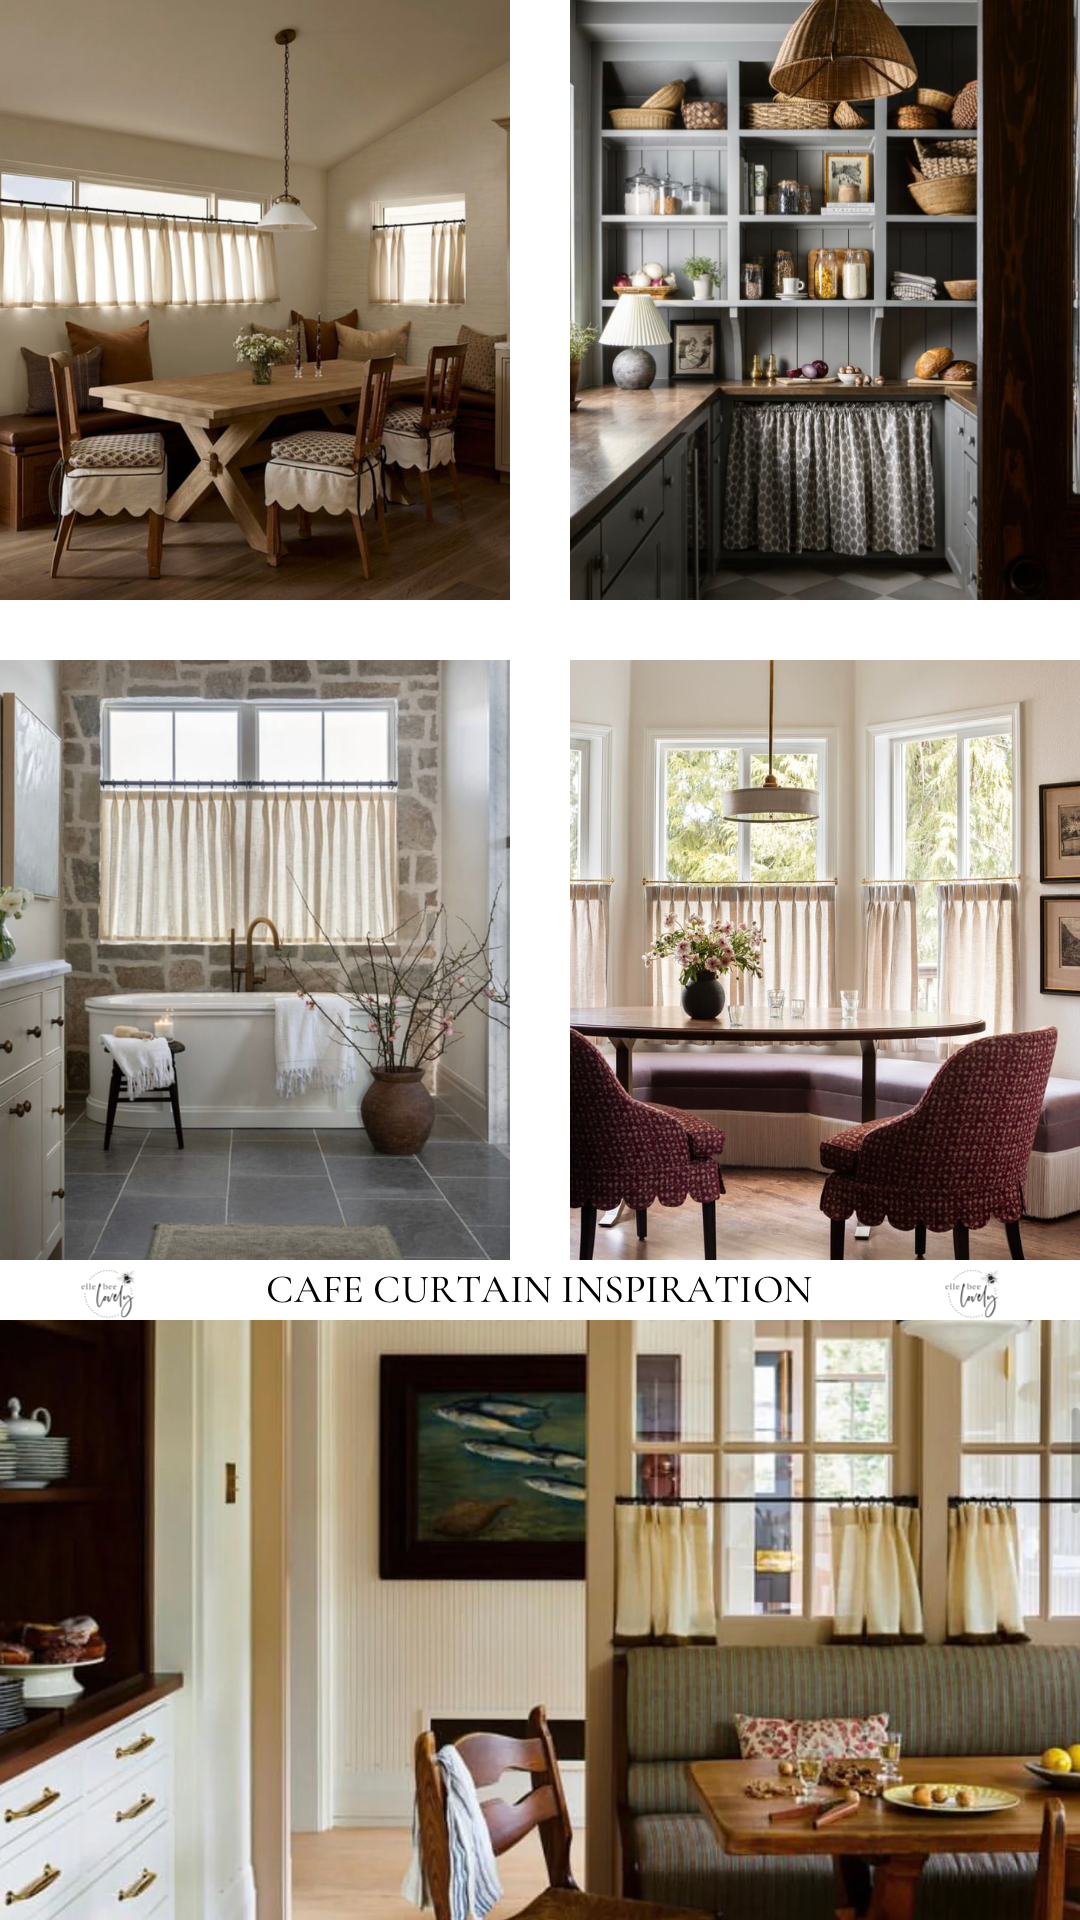 Design Spotlight – Café Curtains